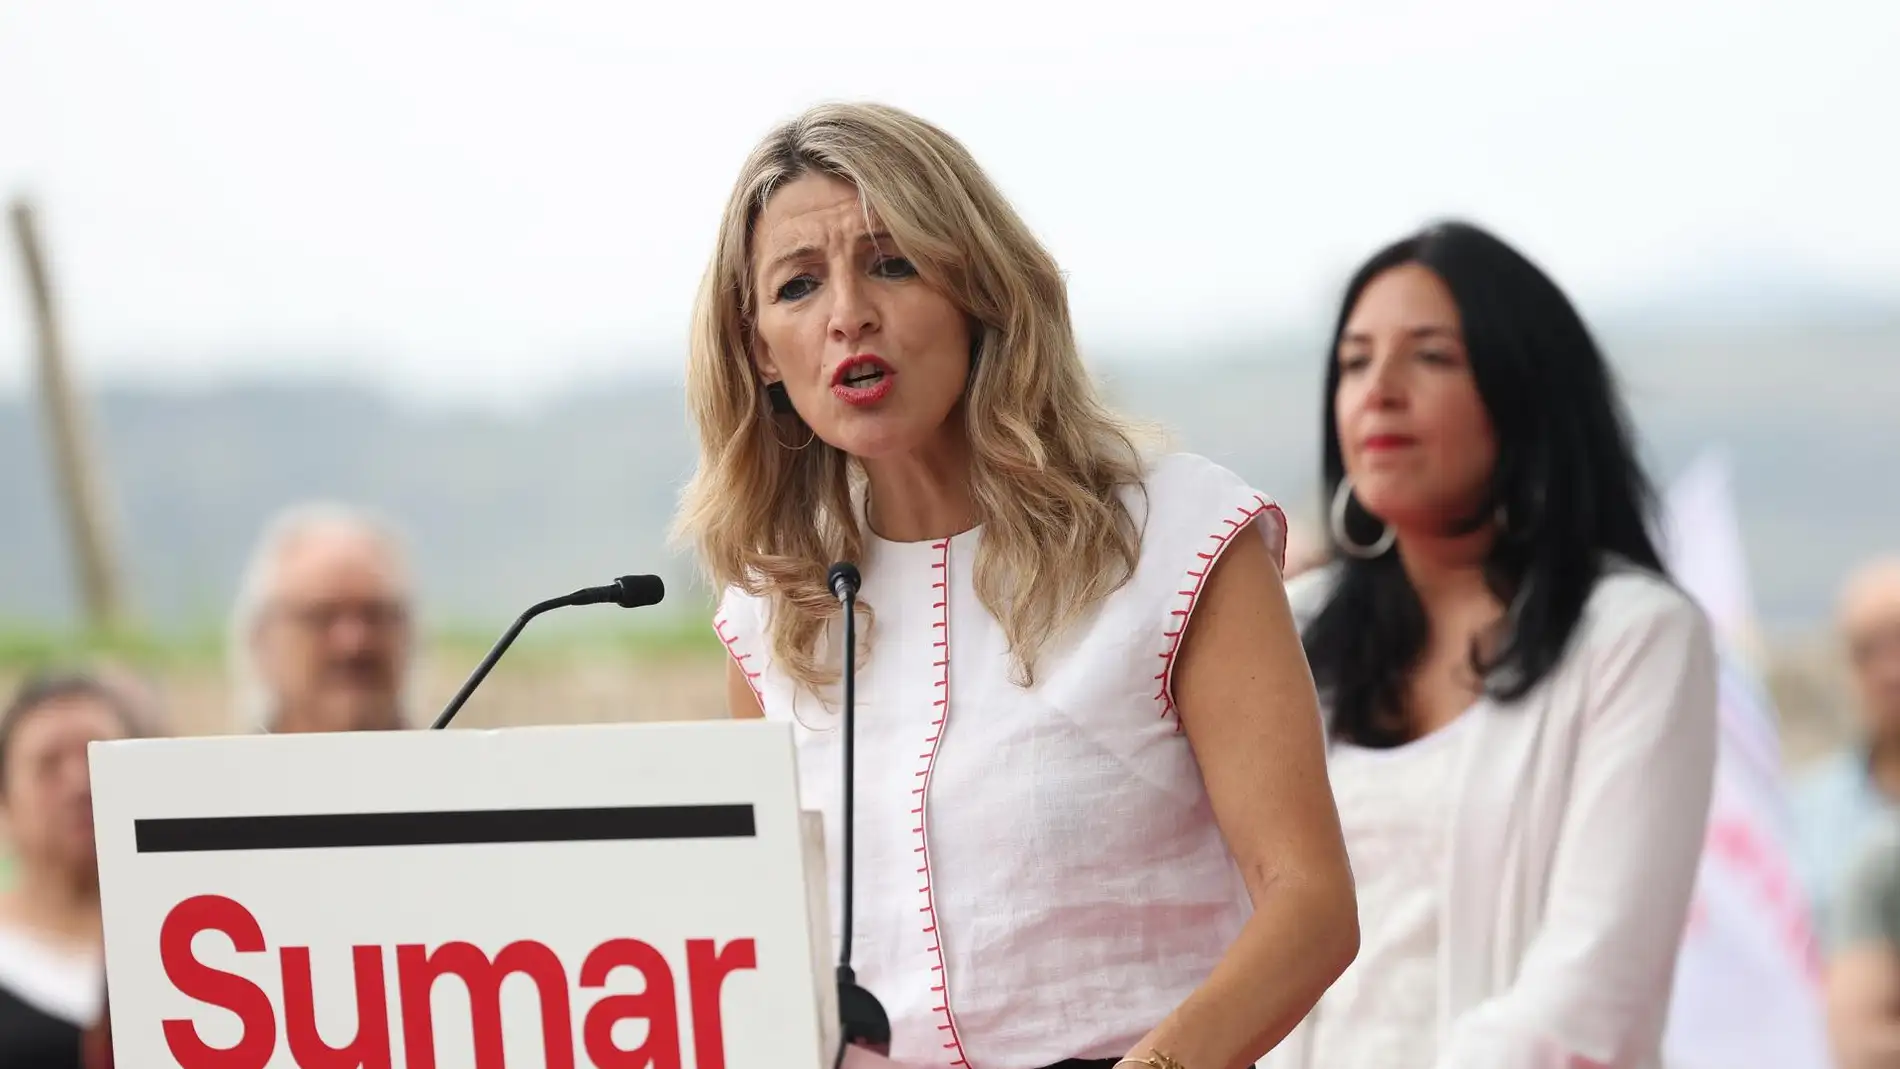 La candidata de SUMAR para las próximas elecciones generales, Yolanda Díaz